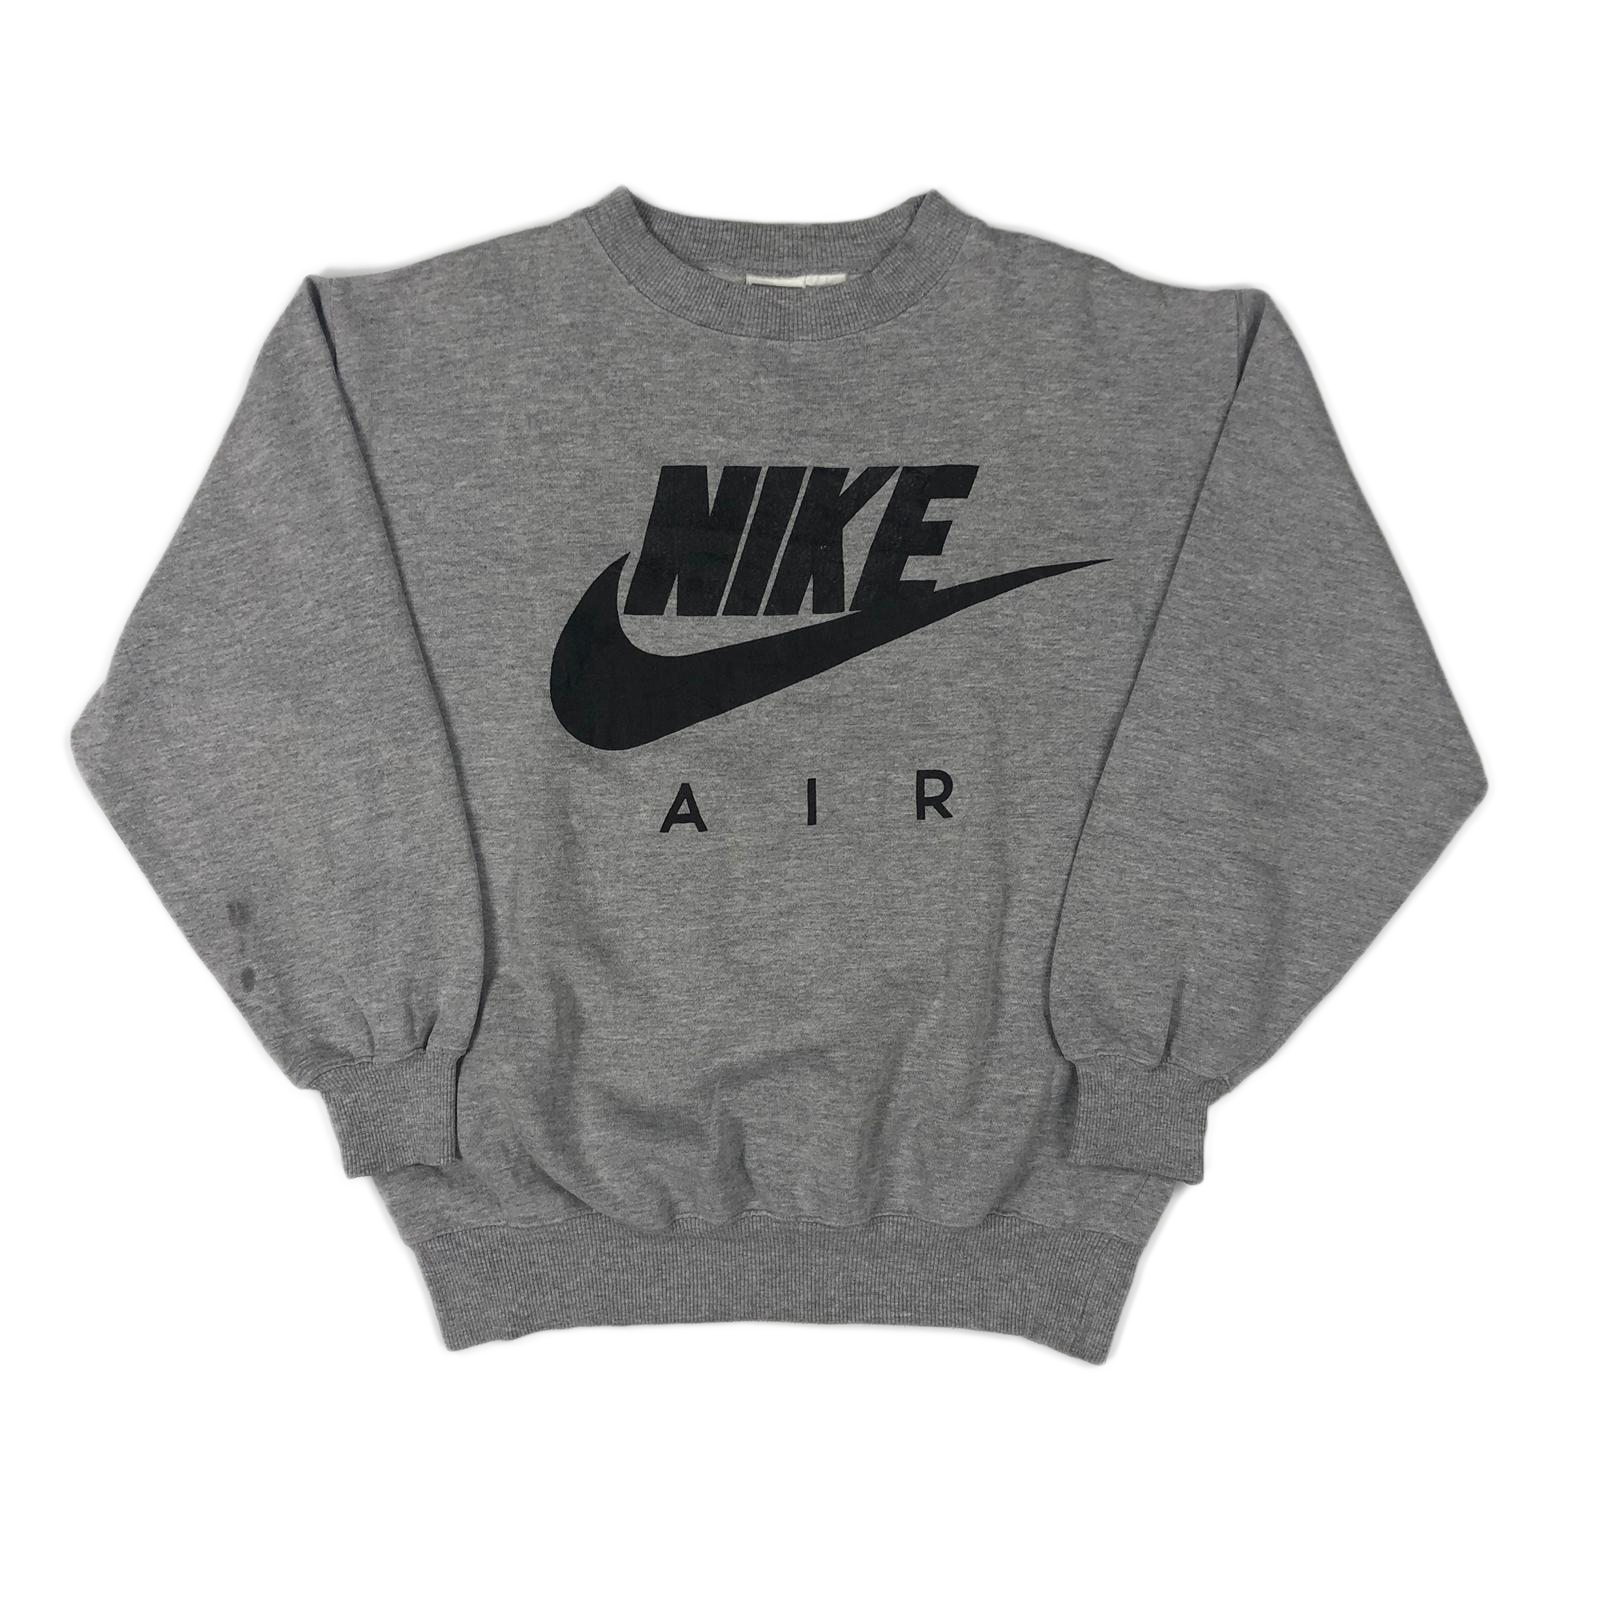 90's Nike Air sweatshirt